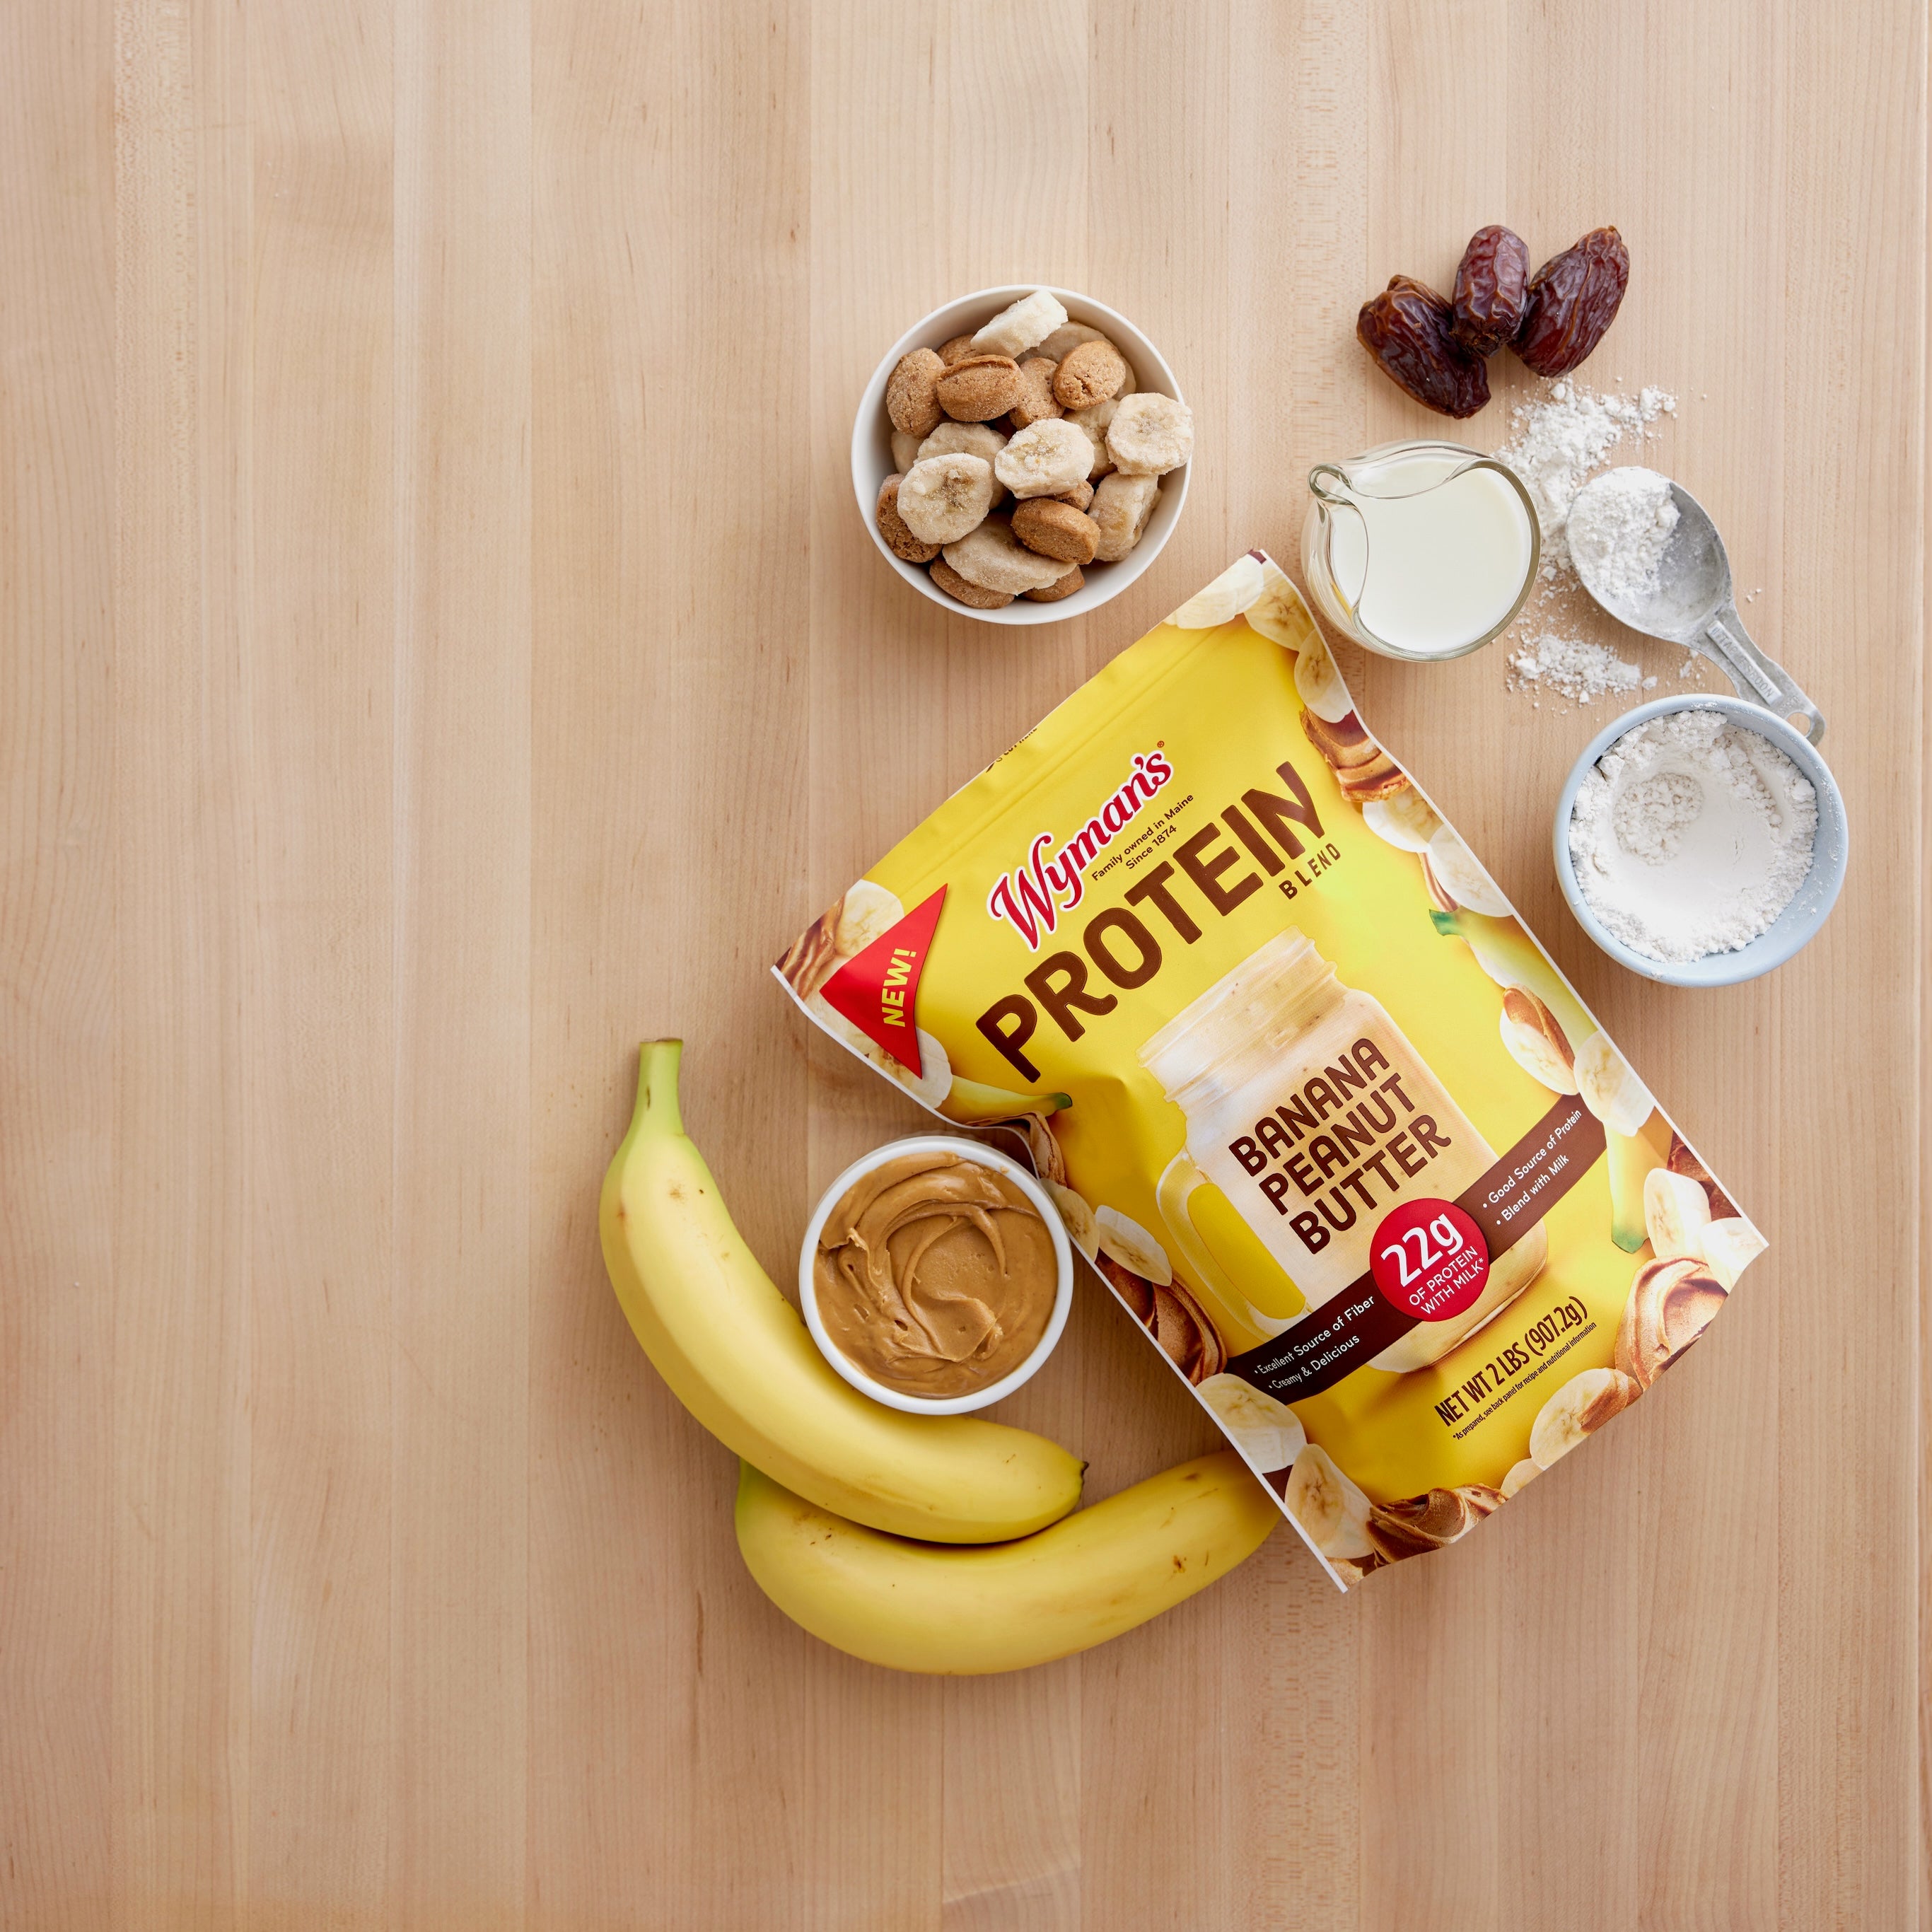 Wyman's Protein Blend - Banana Peanut Butter Ingredients